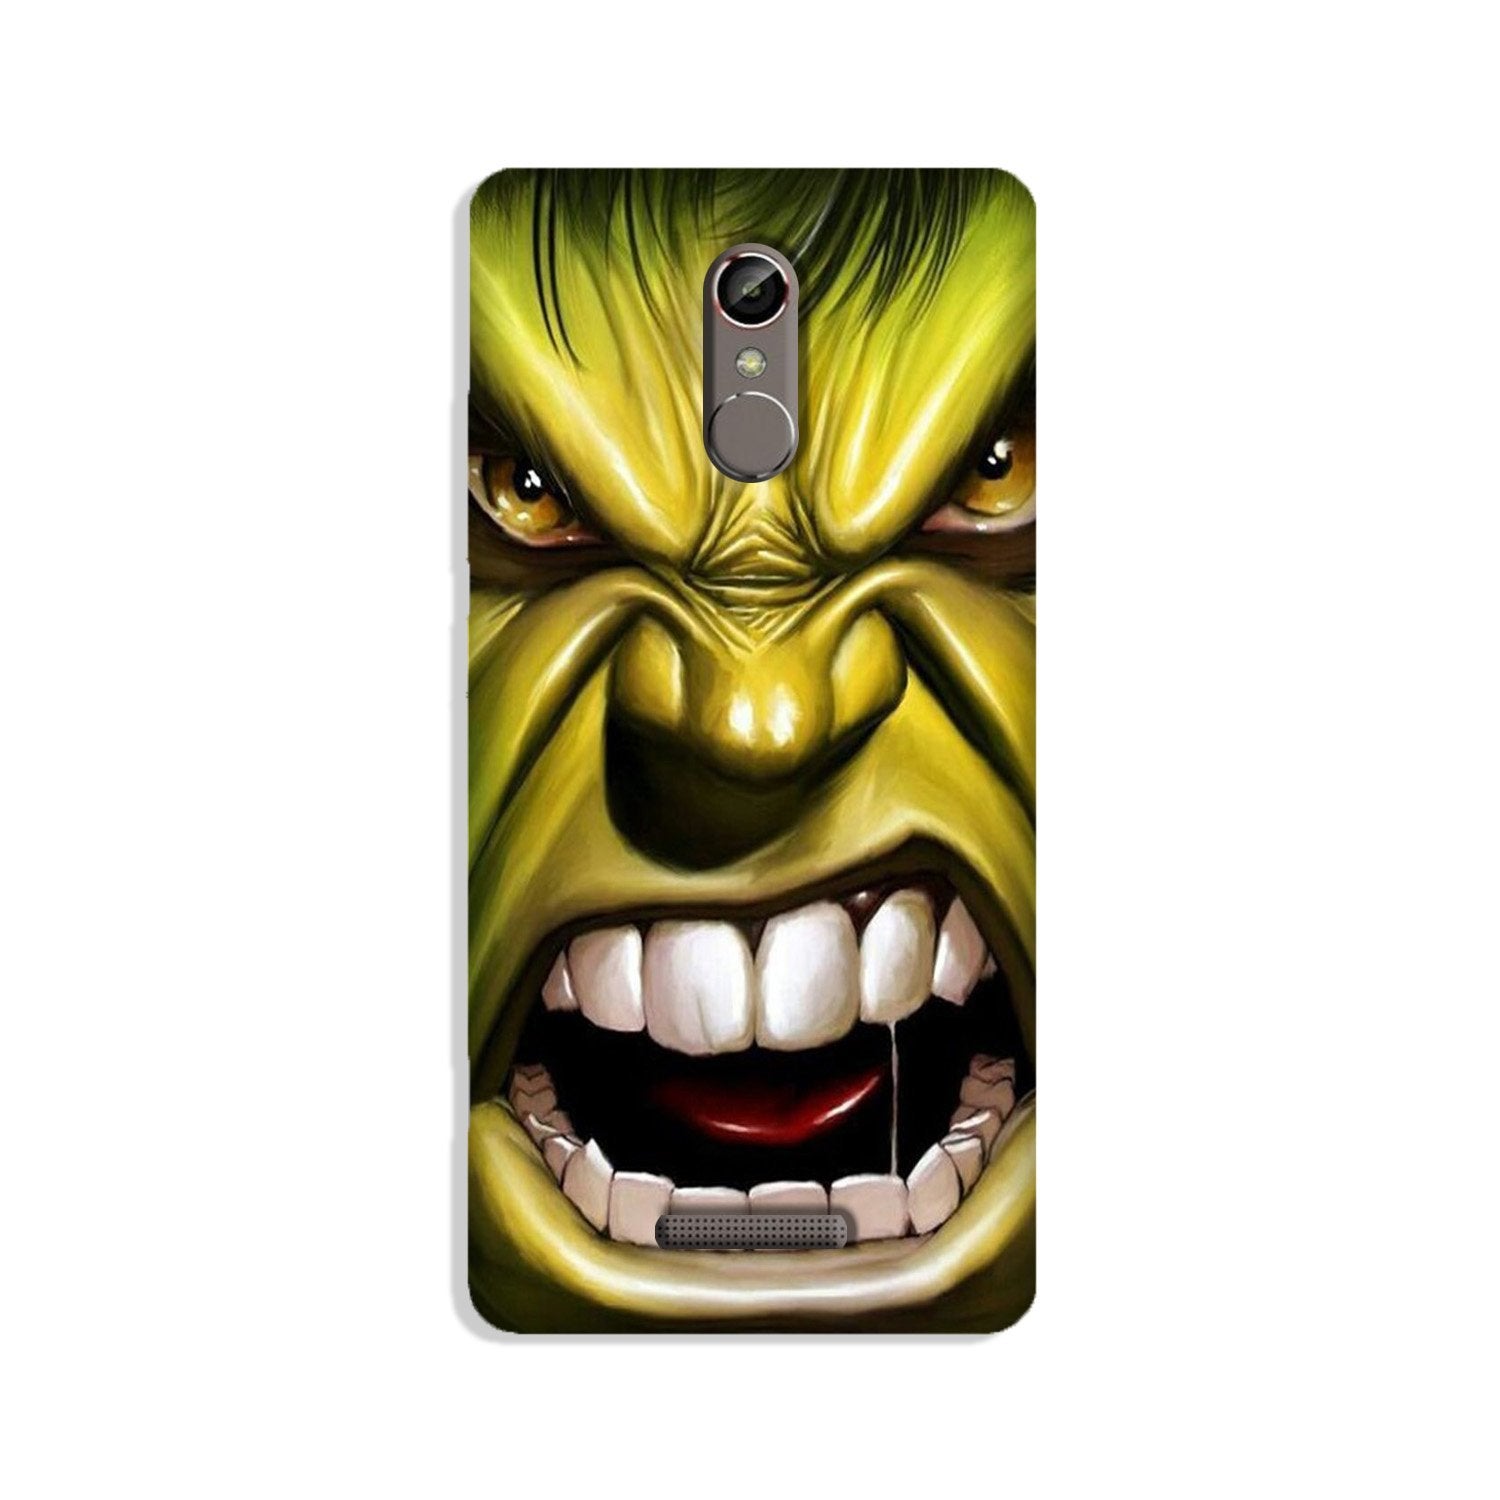 Hulk Superhero Case for Gionee S6s(Design - 121)